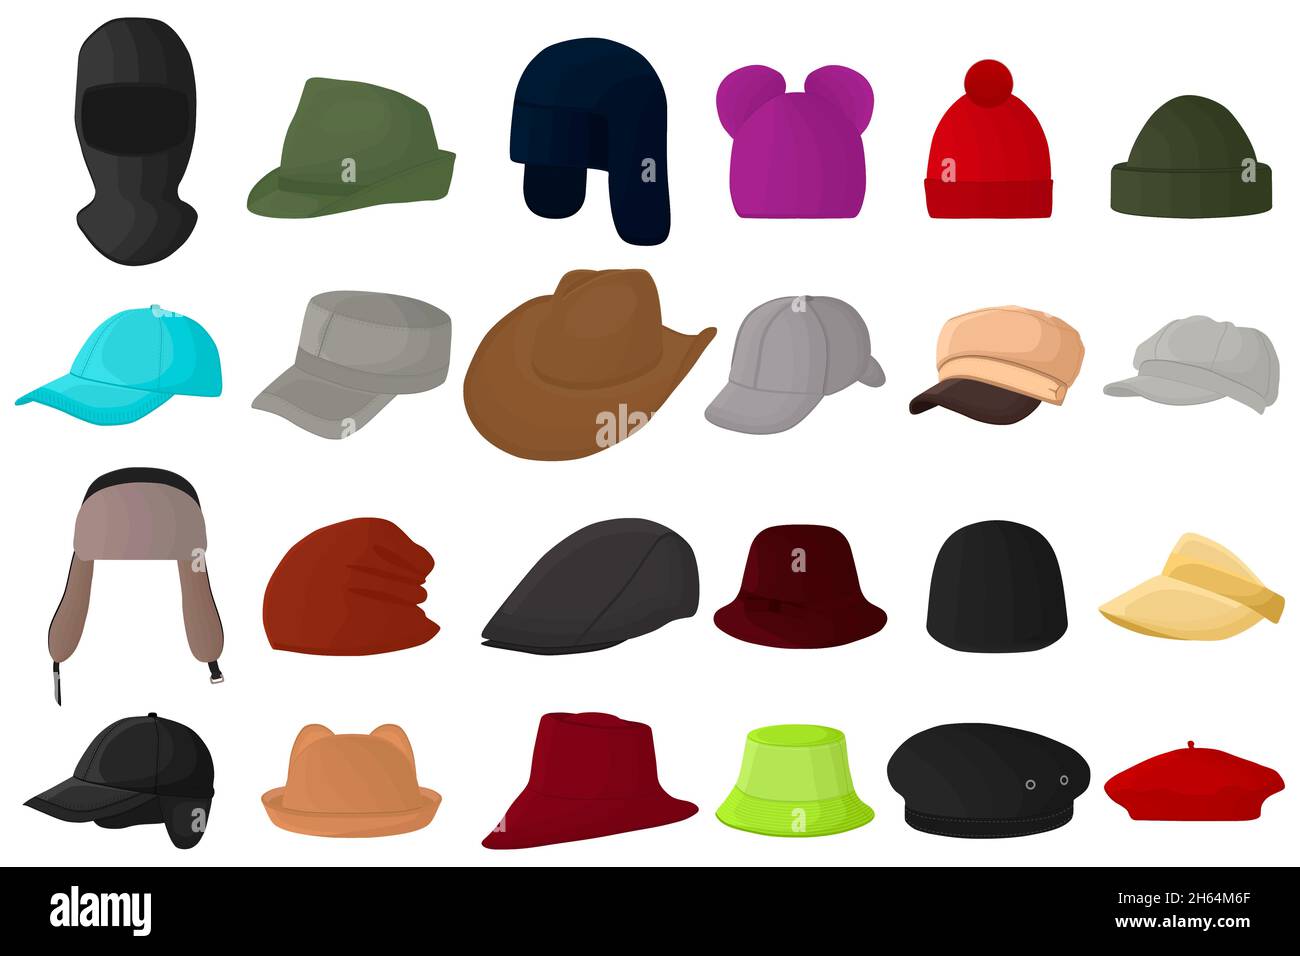 Mütze Kopfbedeckung Stock-Vektorgrafiken kaufen - Alamy